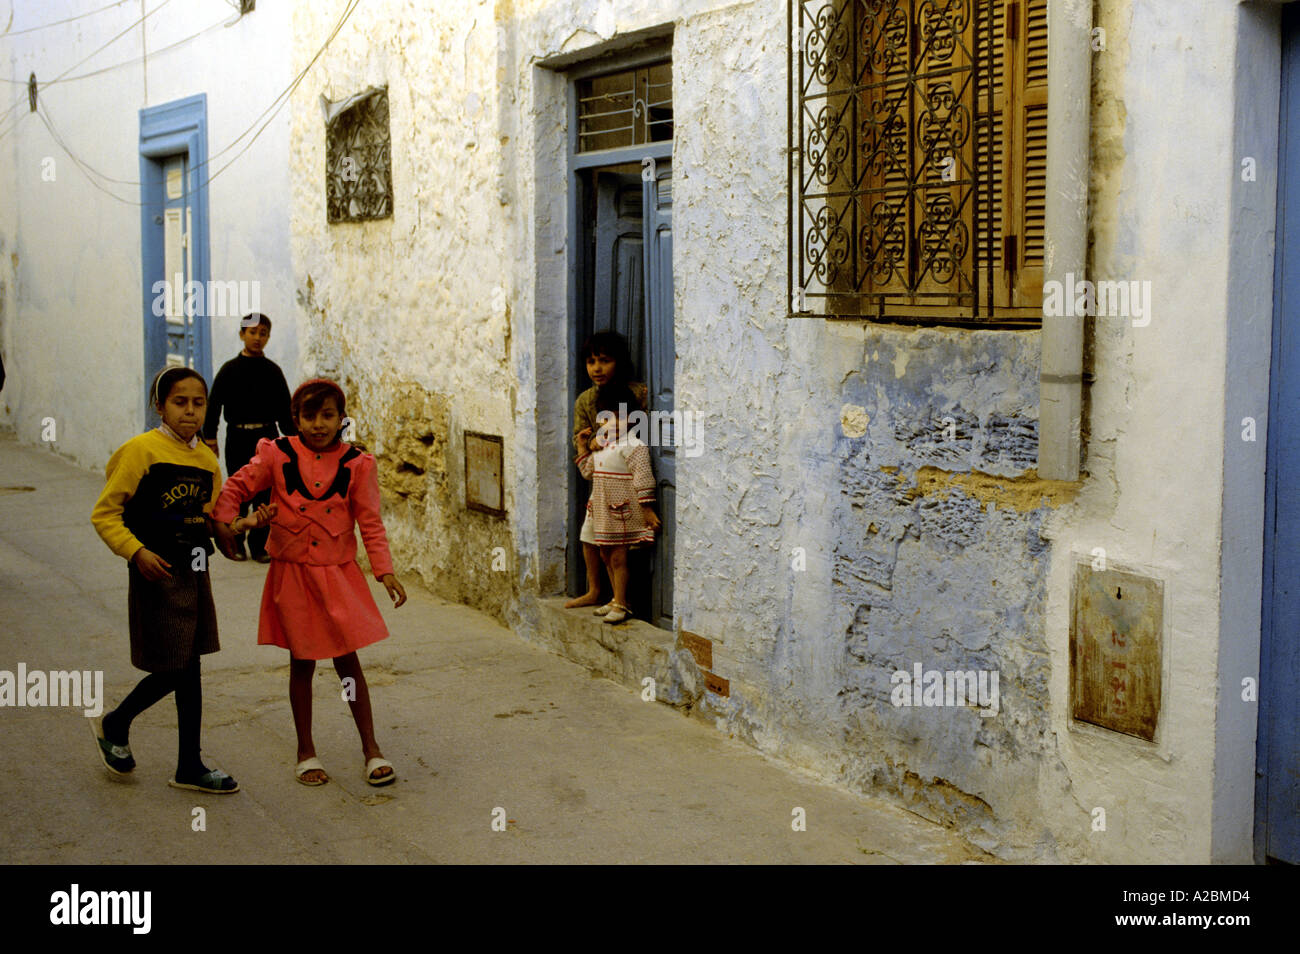 Les filles jouent dans une rue latérale du Maroc Banque D'Images